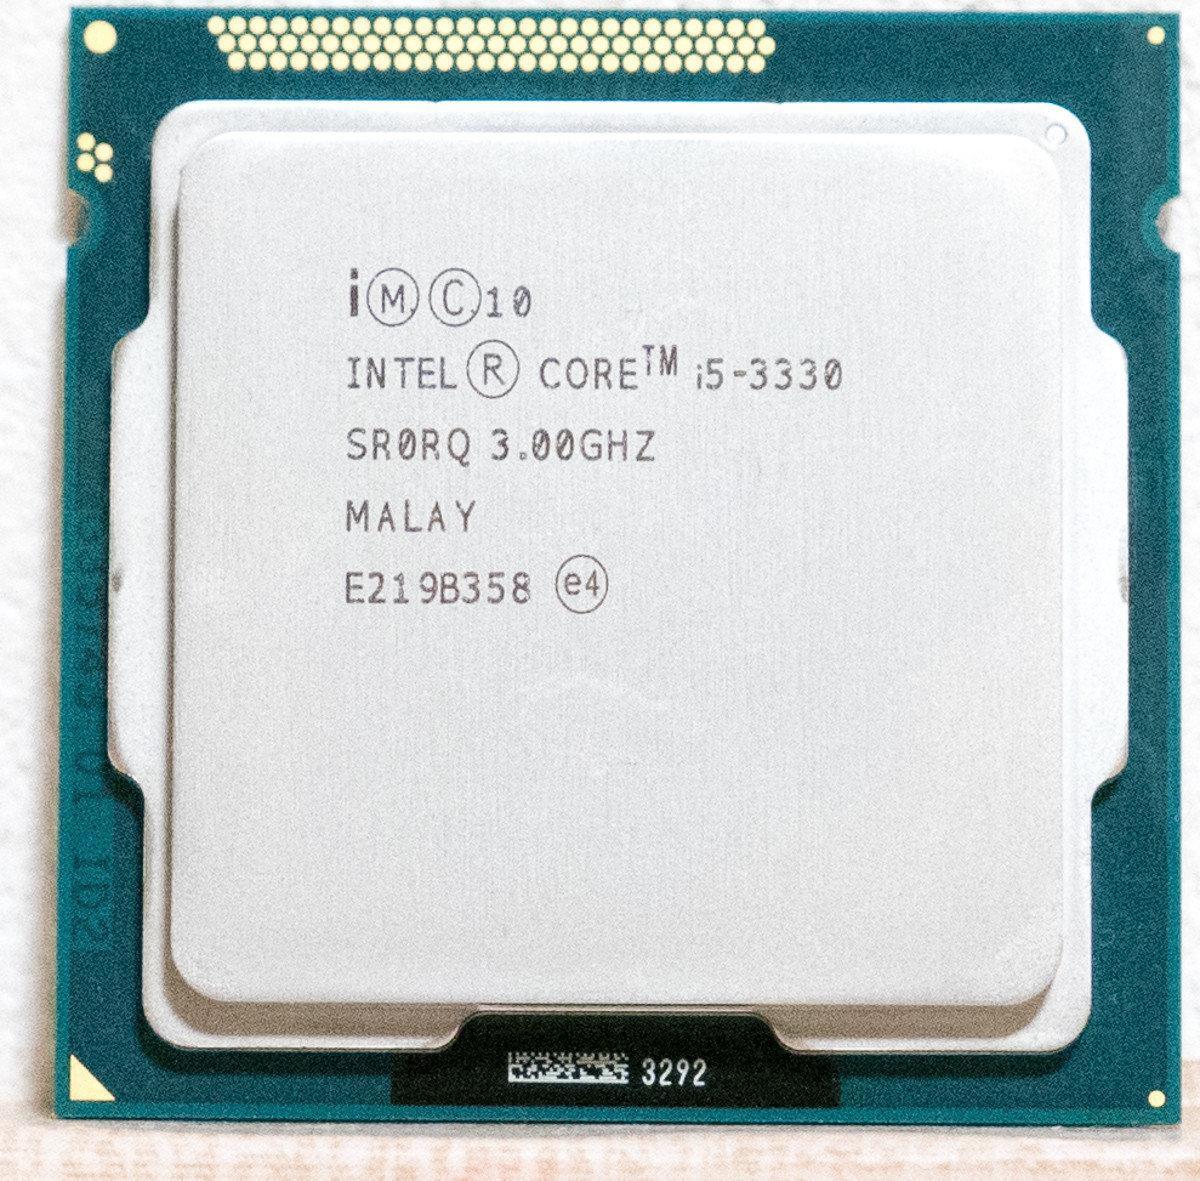 Intel core i5 3330 3.00 ghz. Intel Core i5 3330 srorq 3,00ghz Costa Rica. Intel Core i5 3330. Intel Core 5 3330. Процессор Intel Core i5 1155.